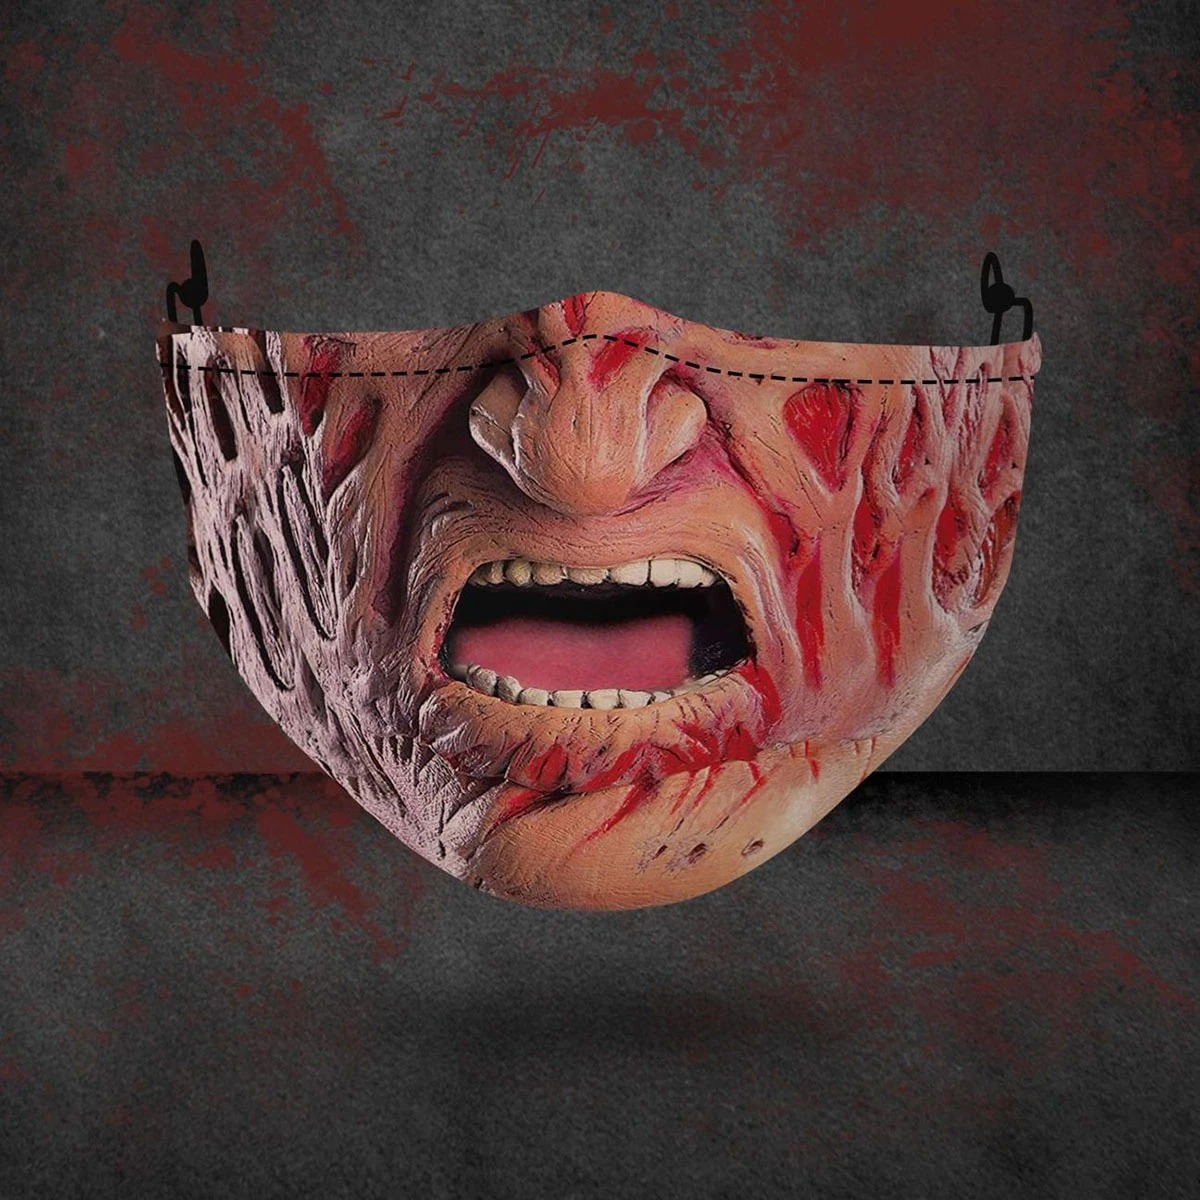 Freddy Krueger 3D face mask